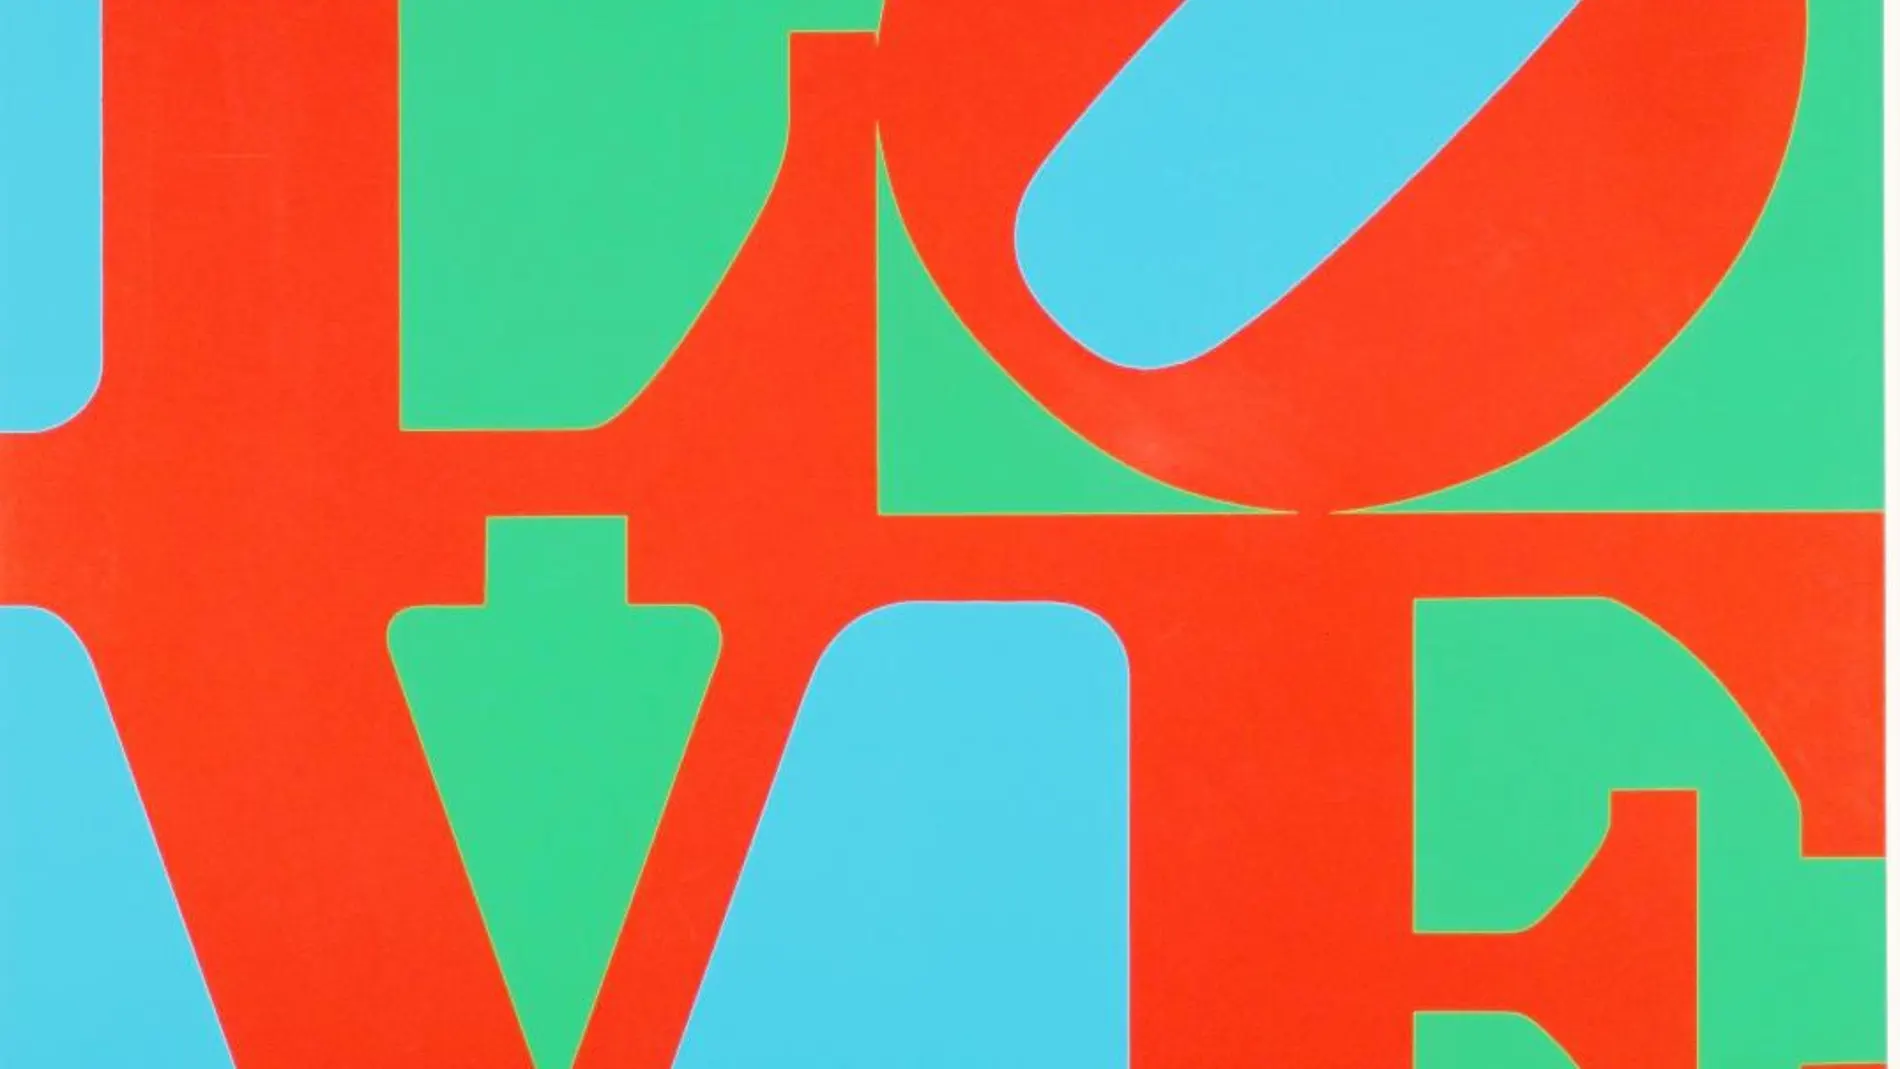 La archifamosa «Love» de Robert Indiana nació en 1964 en forma de felicitación navideña encargada por el MoMA